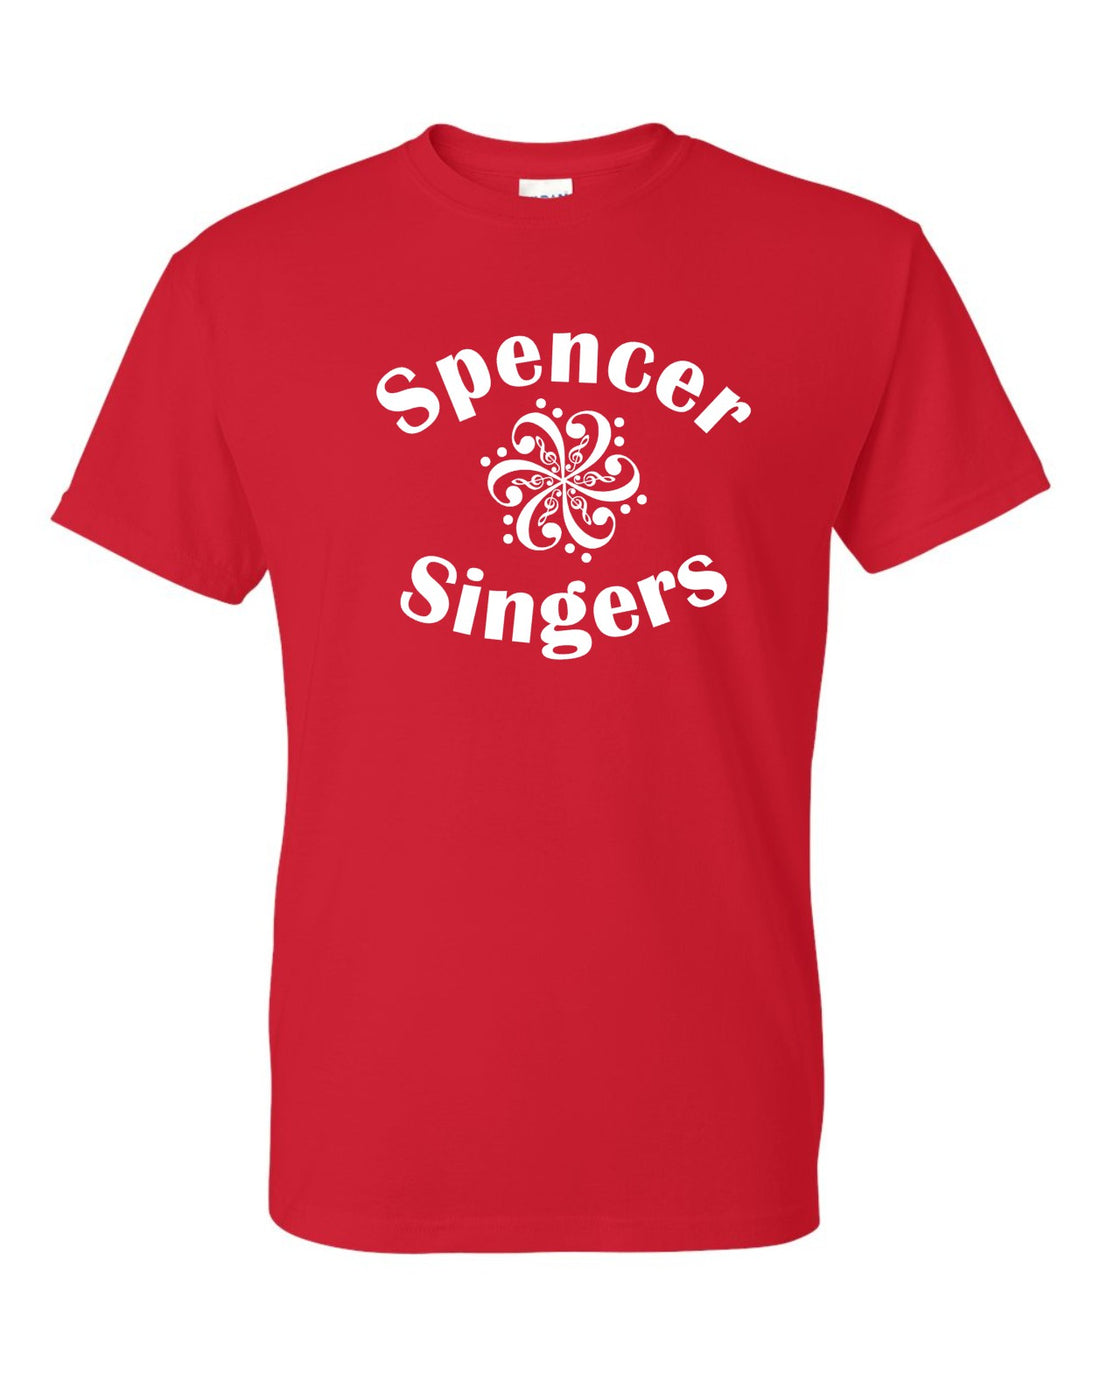 Spencer Singers Tee